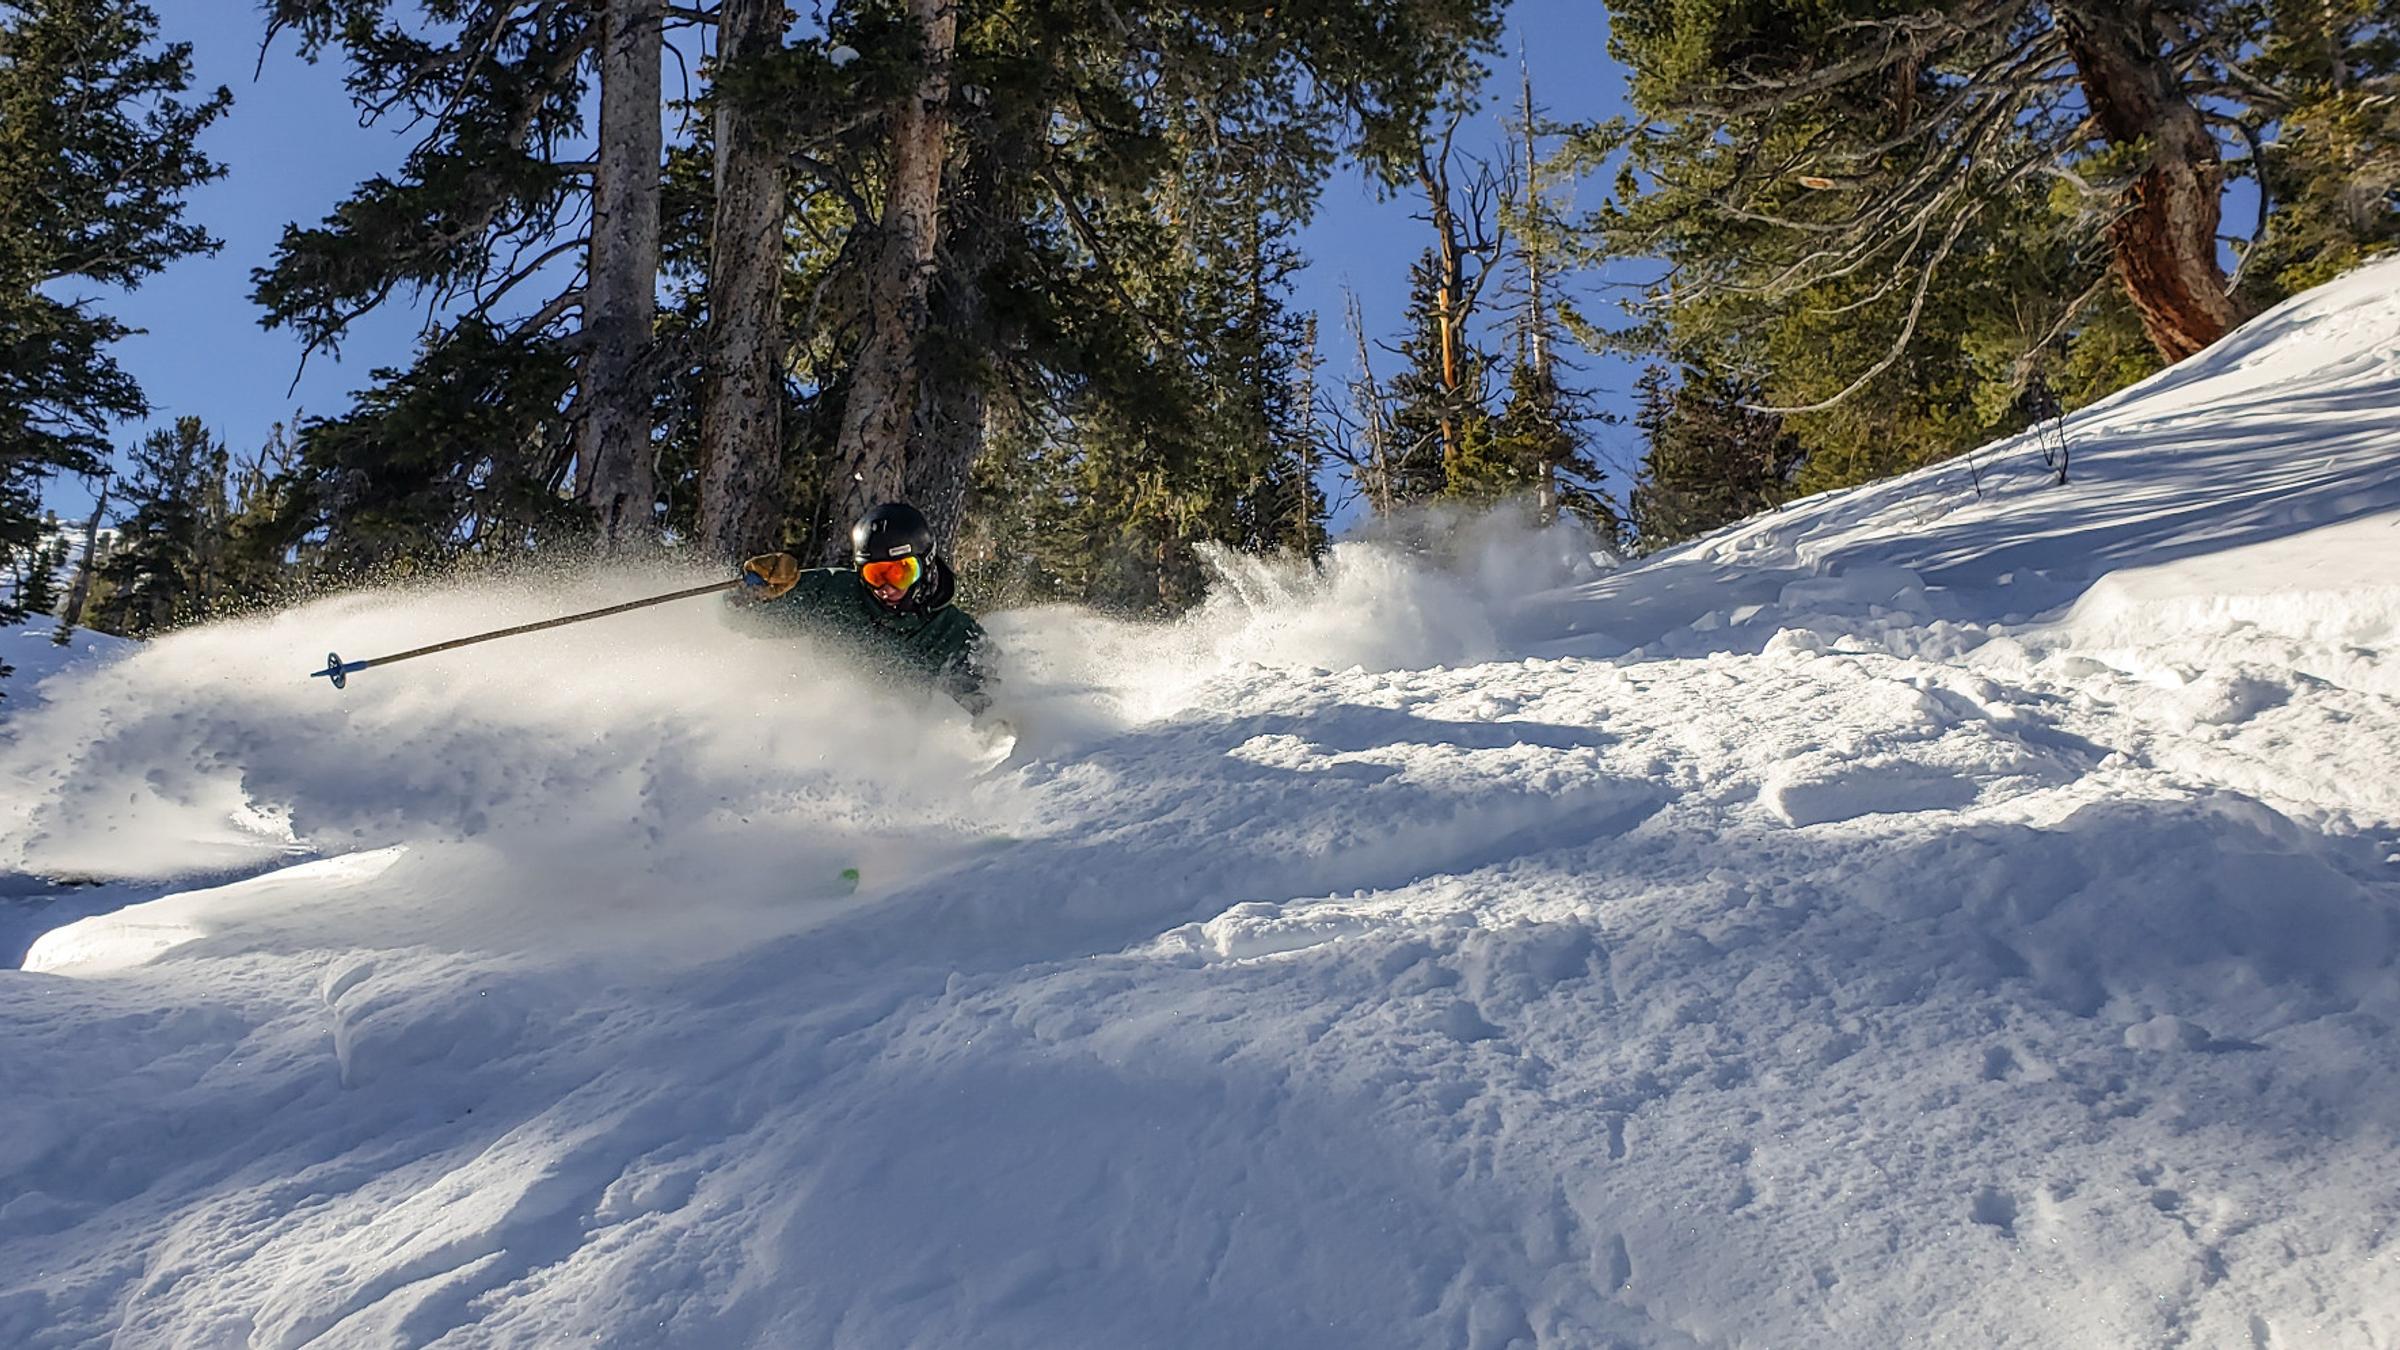 Big Mountain Athlete Skis Powder